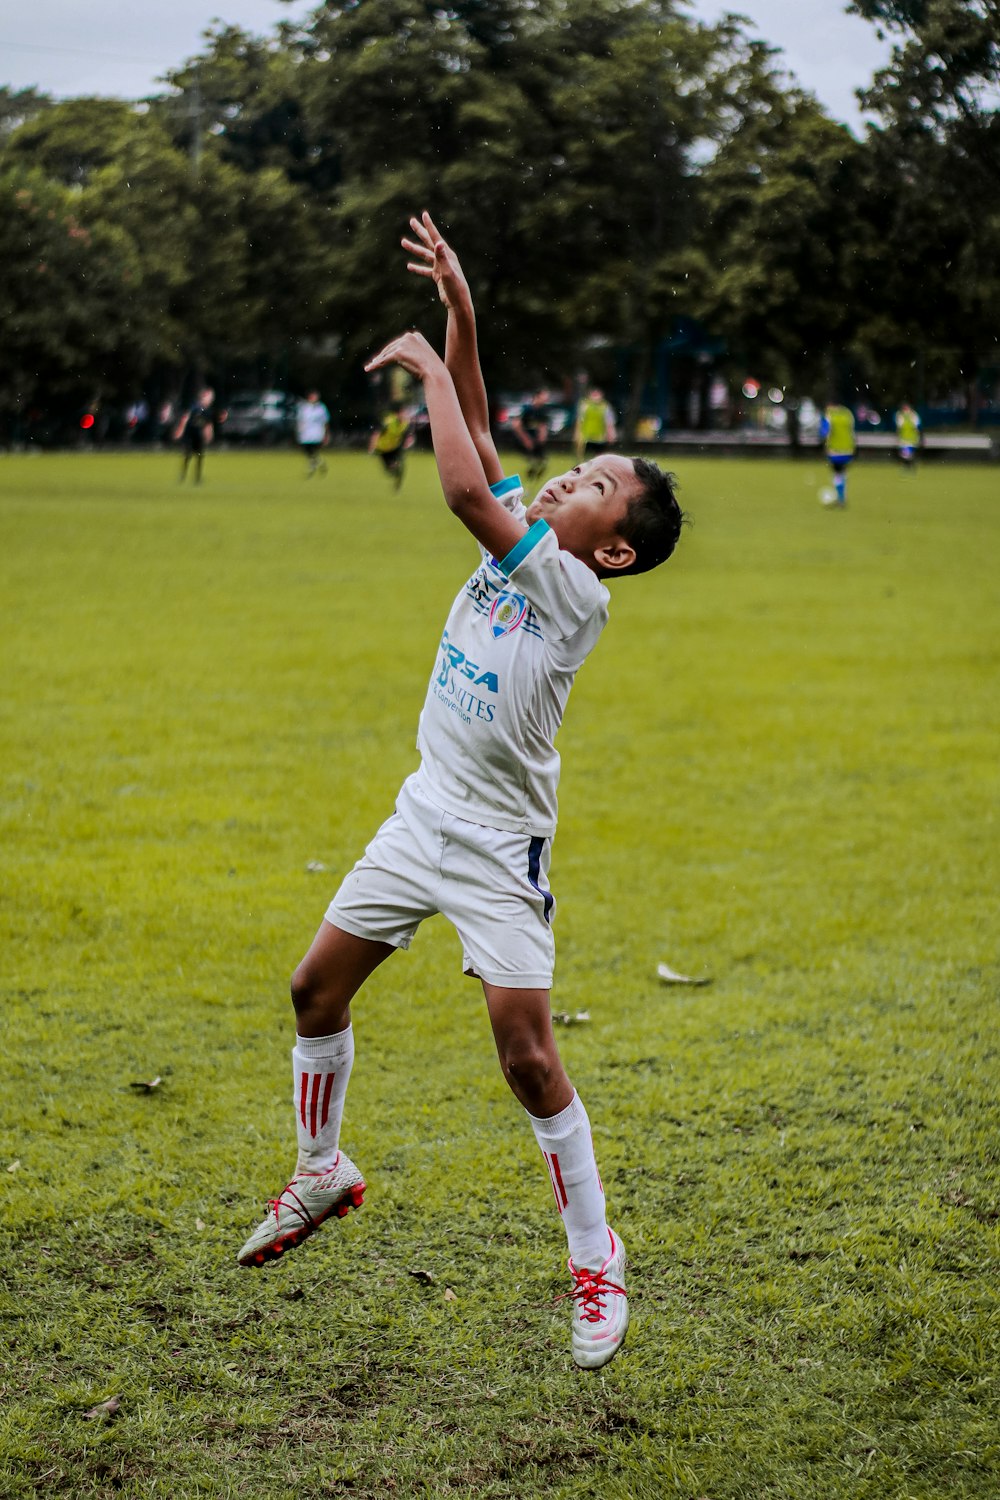 Mann im weißen Fußballtrikot kickt tagsüber Fußball auf grünem Rasen